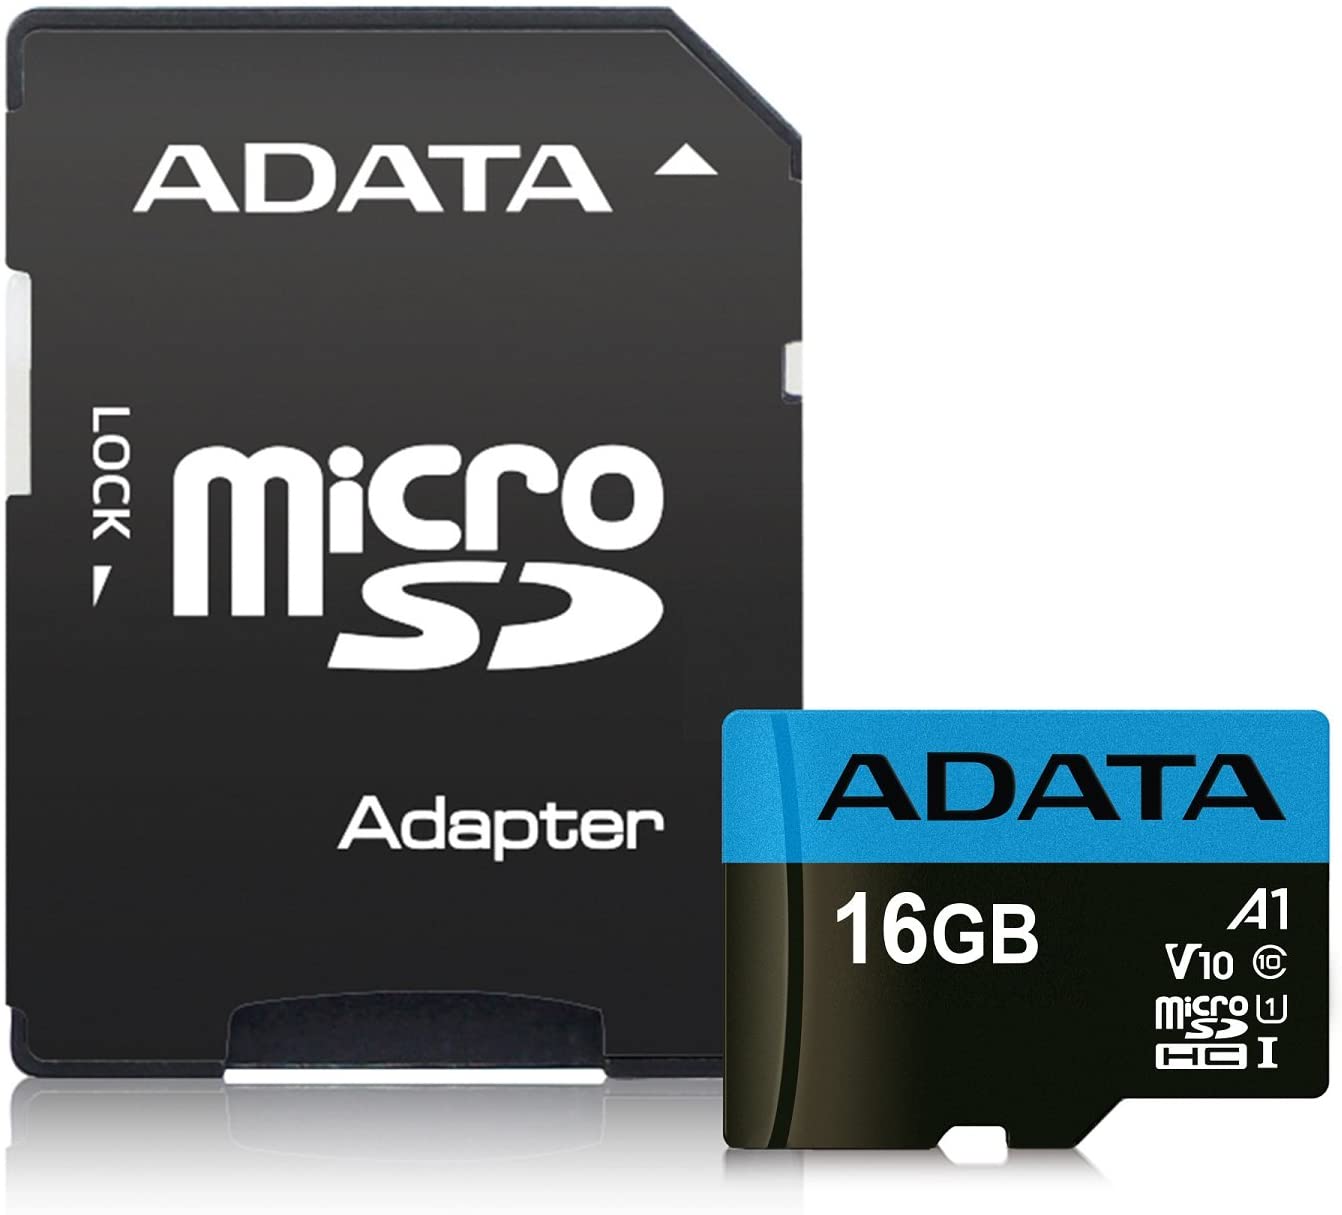 SD CARD ADATA 16GB